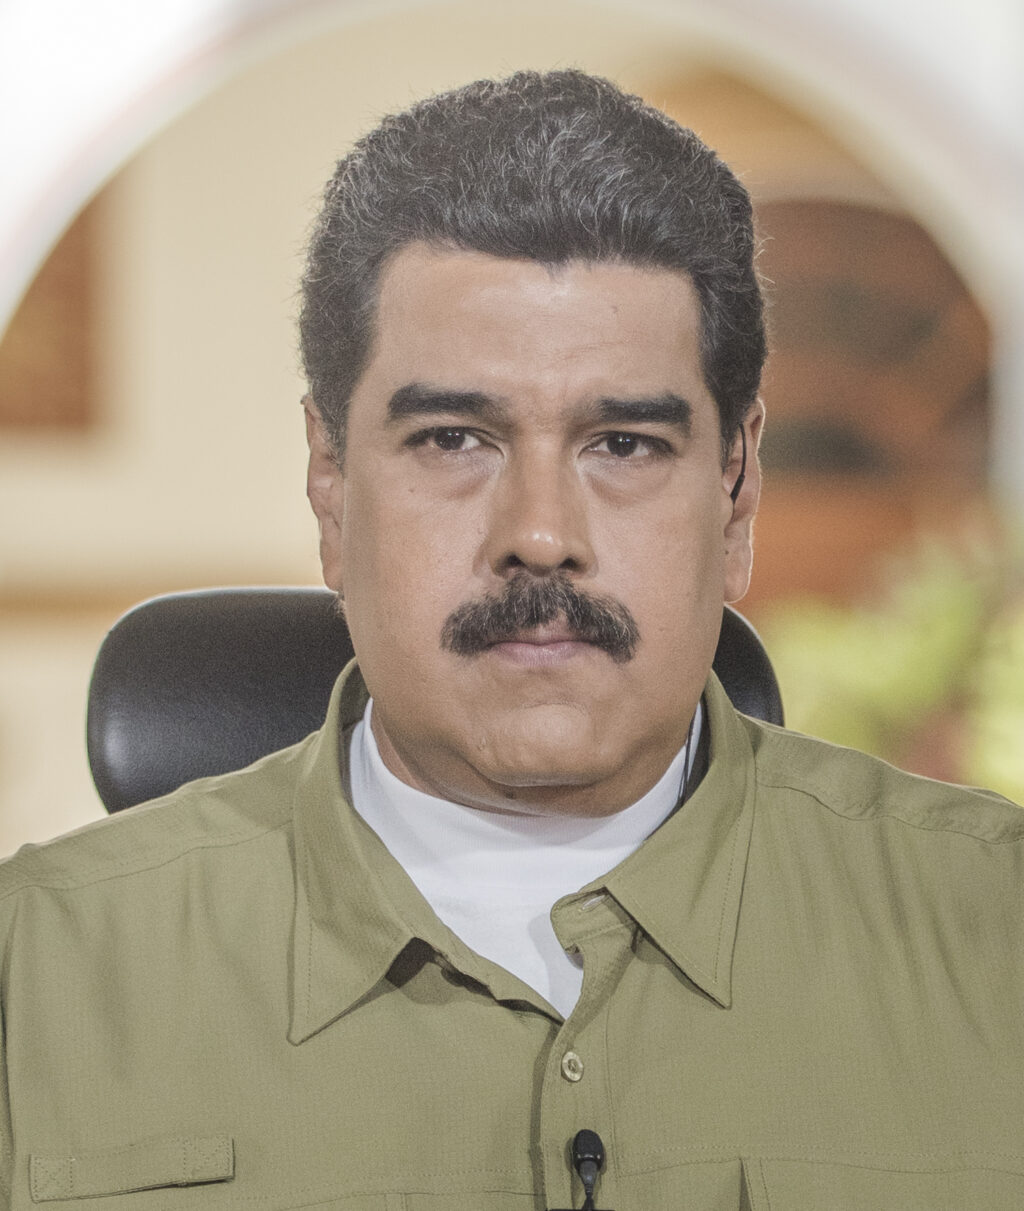 Story: Sólo si el dictador Maduro cede espacios democráticos evaluarían levantar algunas sanciones